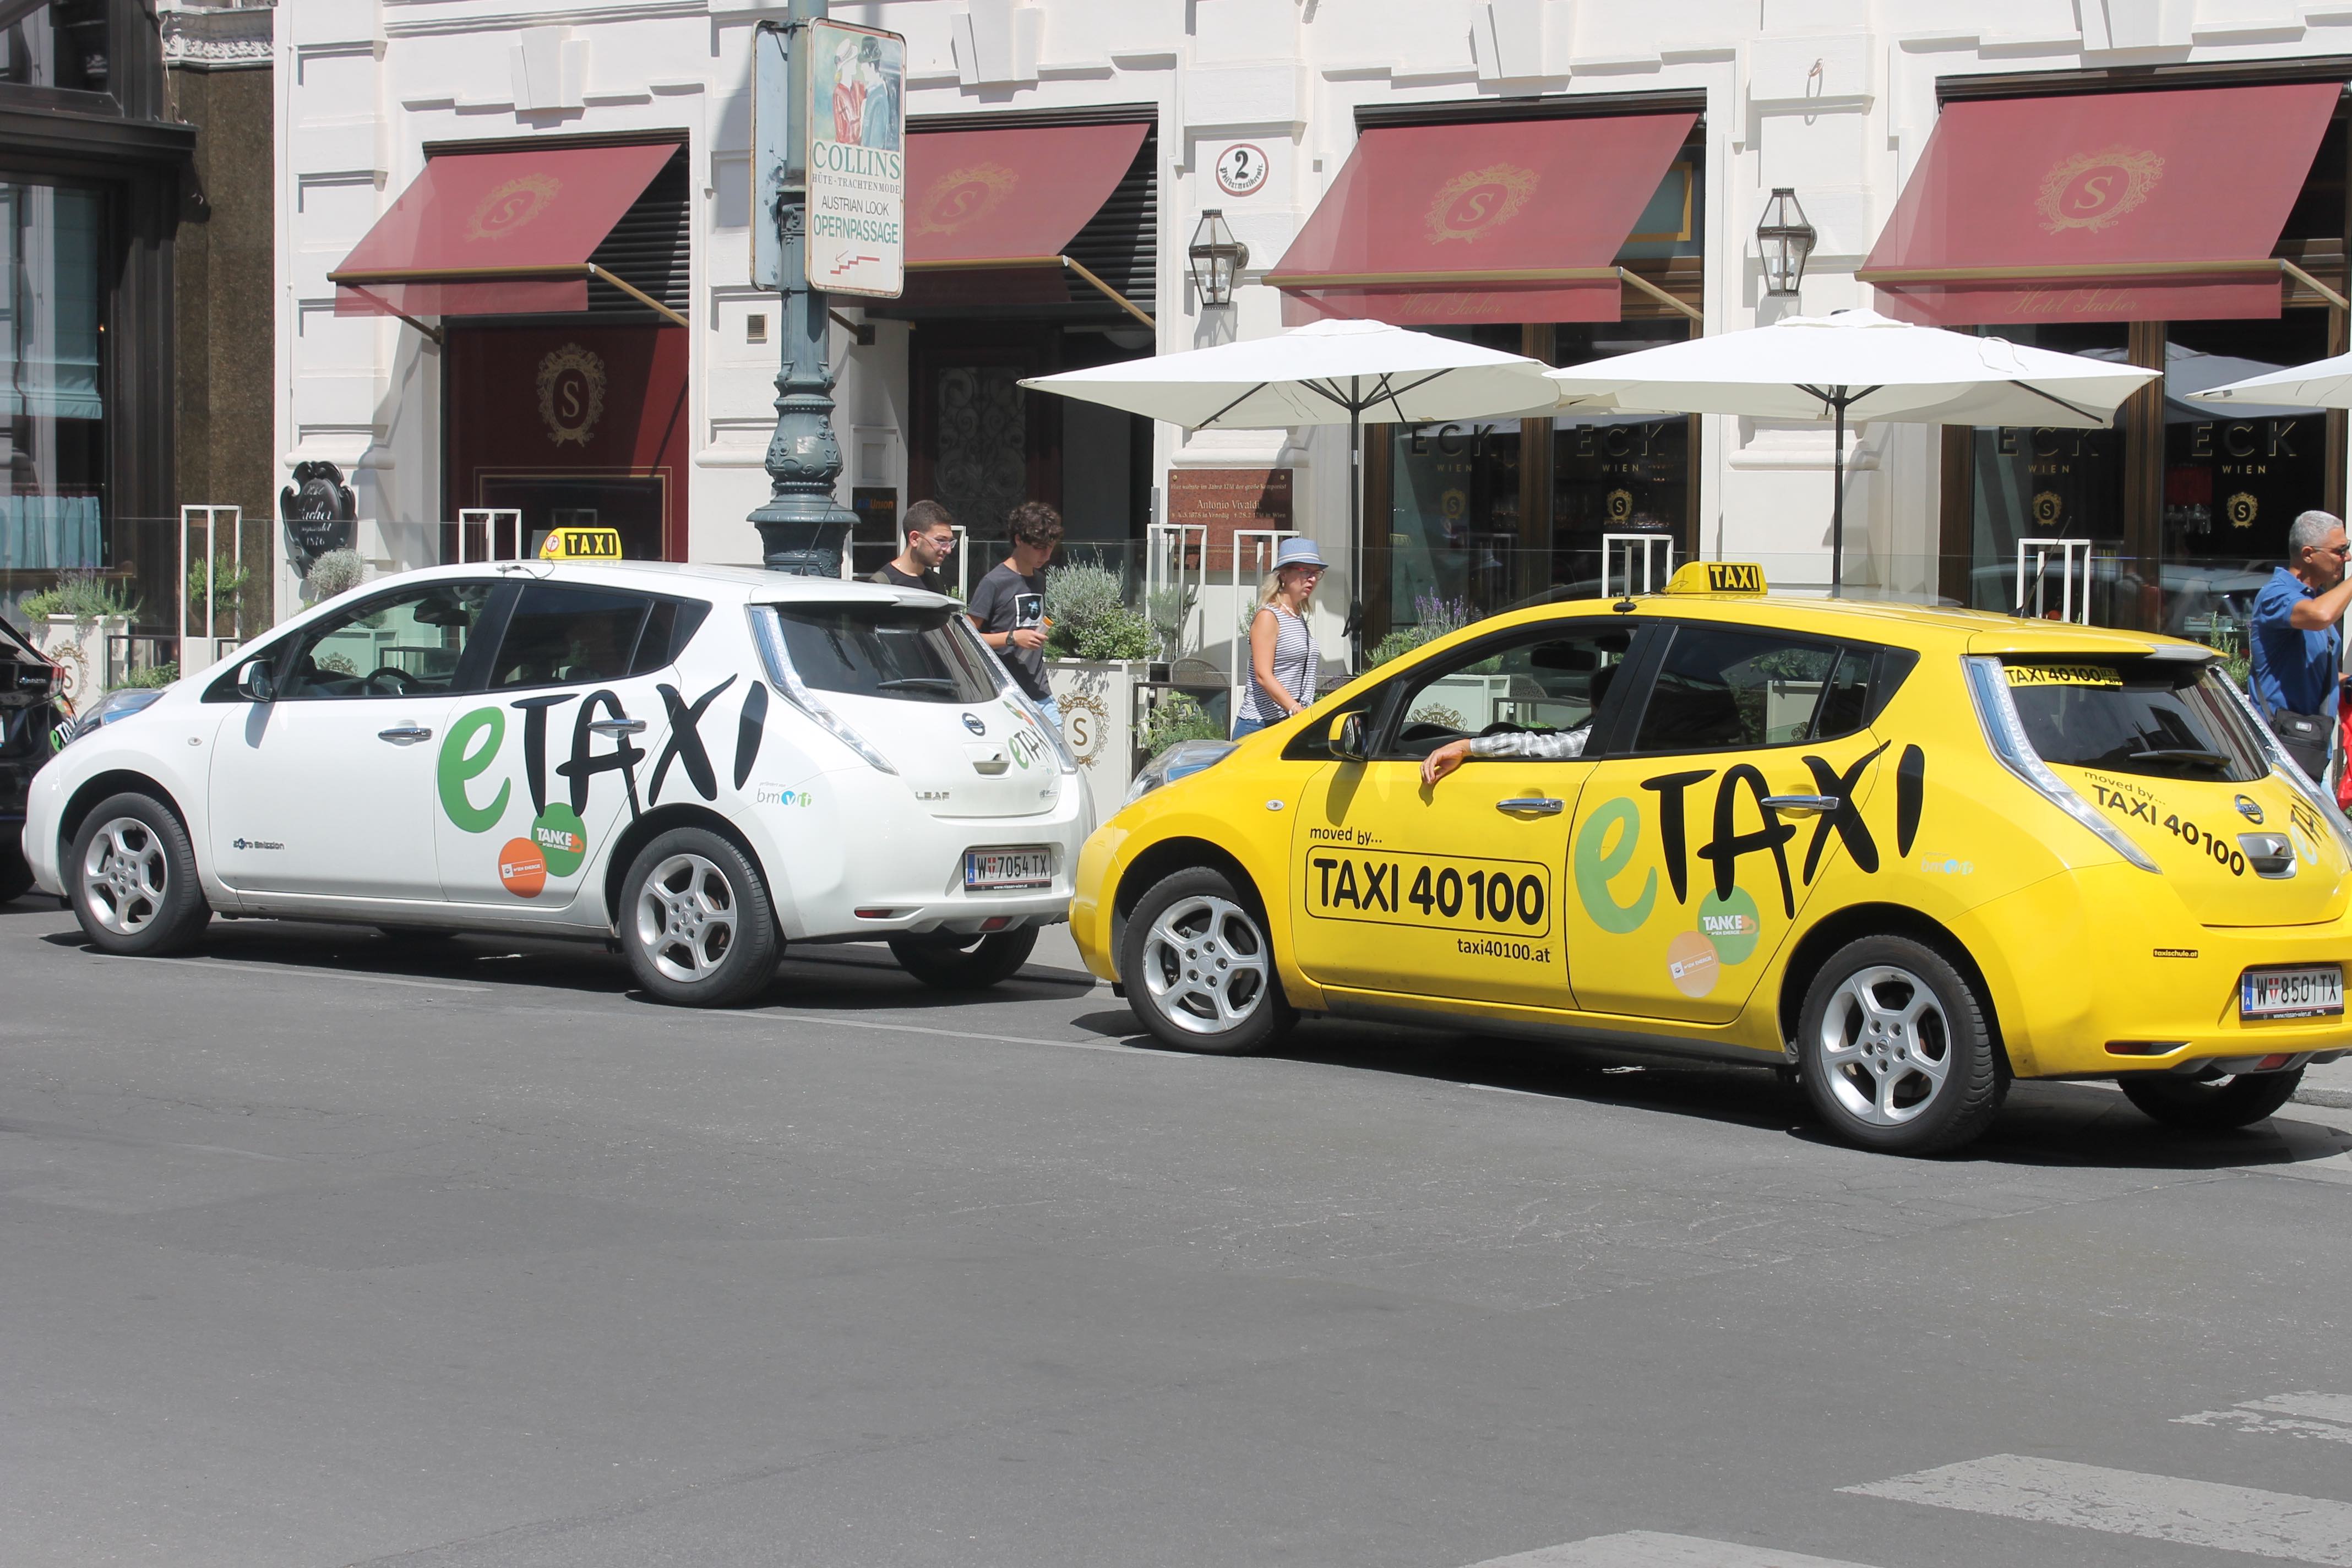 Blog: Mobilität in Wien geht weit über E-Taxi hinaus…